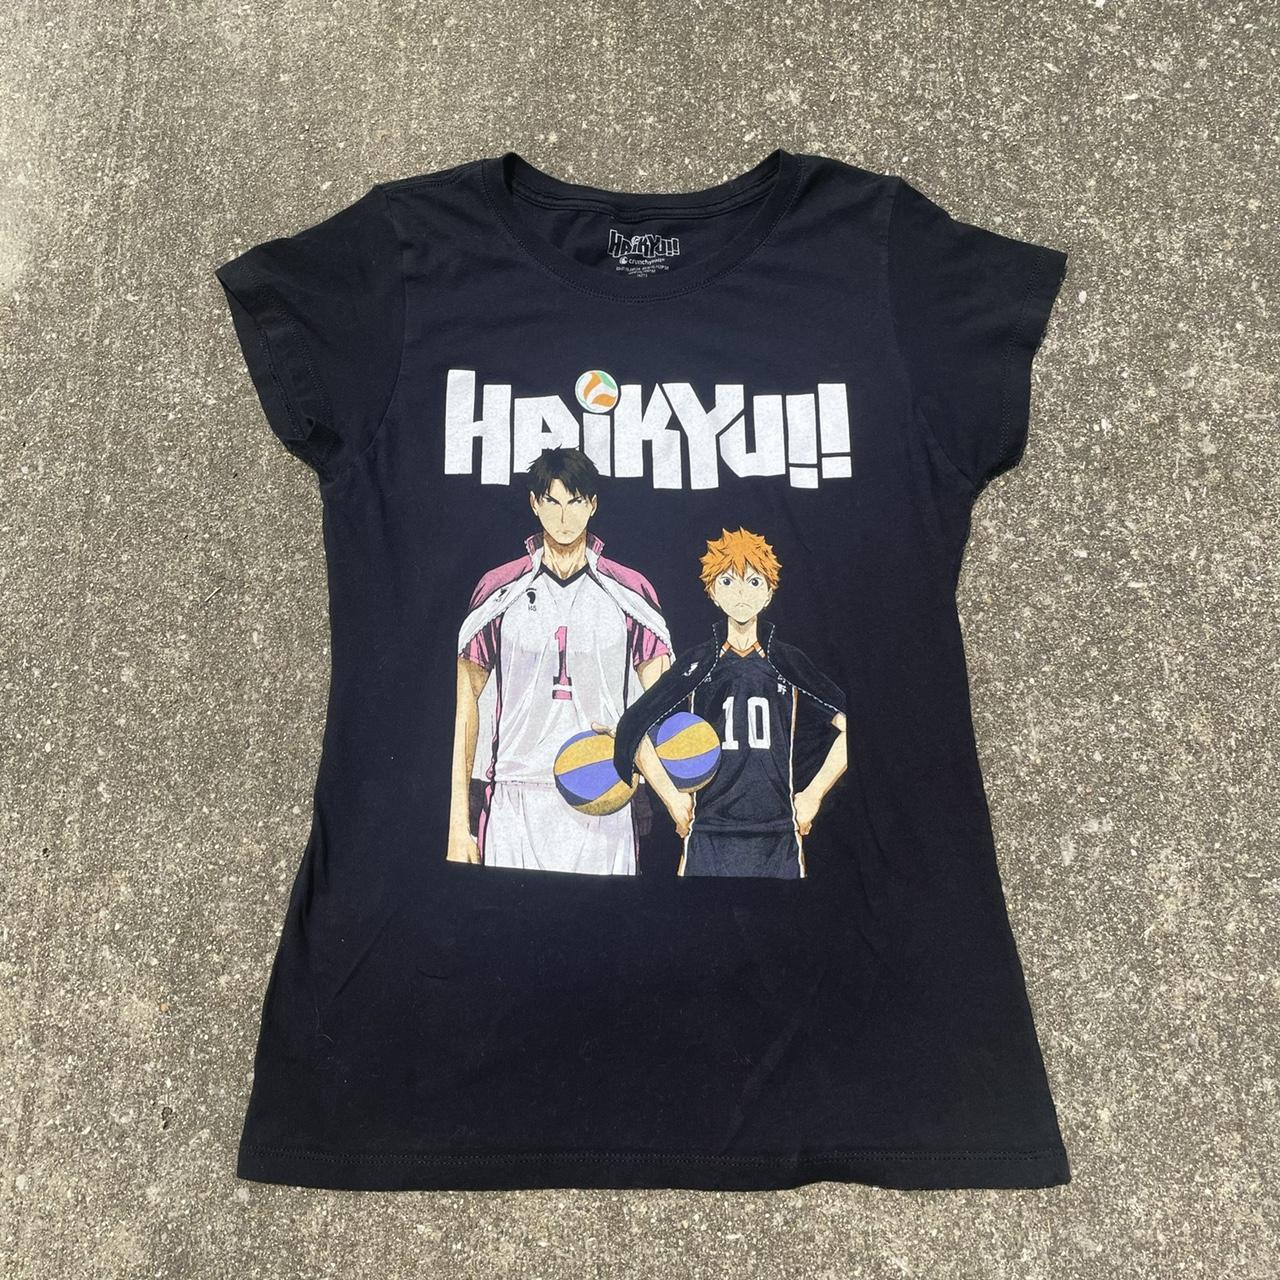 Haikyuu T-shirt Women's Size Medium M Black Anime Crunchyroll